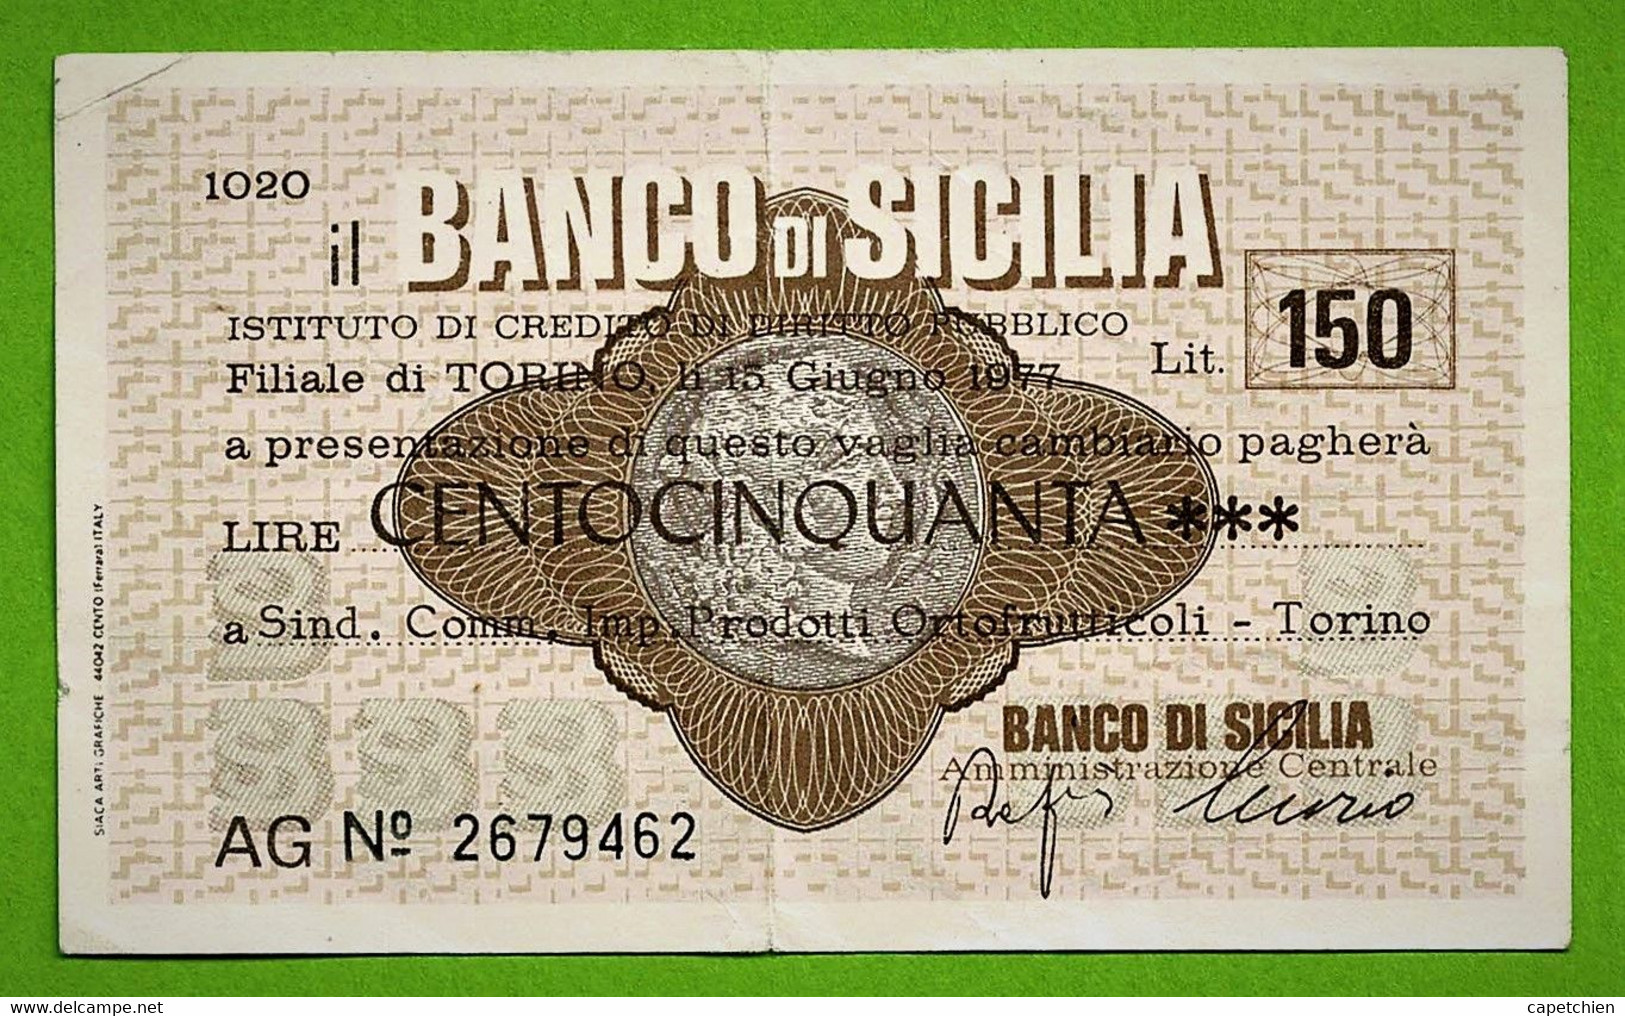 ITALIE / IL BANCO DI SICILIA / AG 2679462 / 150 LIRE / 1977 - Buoni Di Cassa